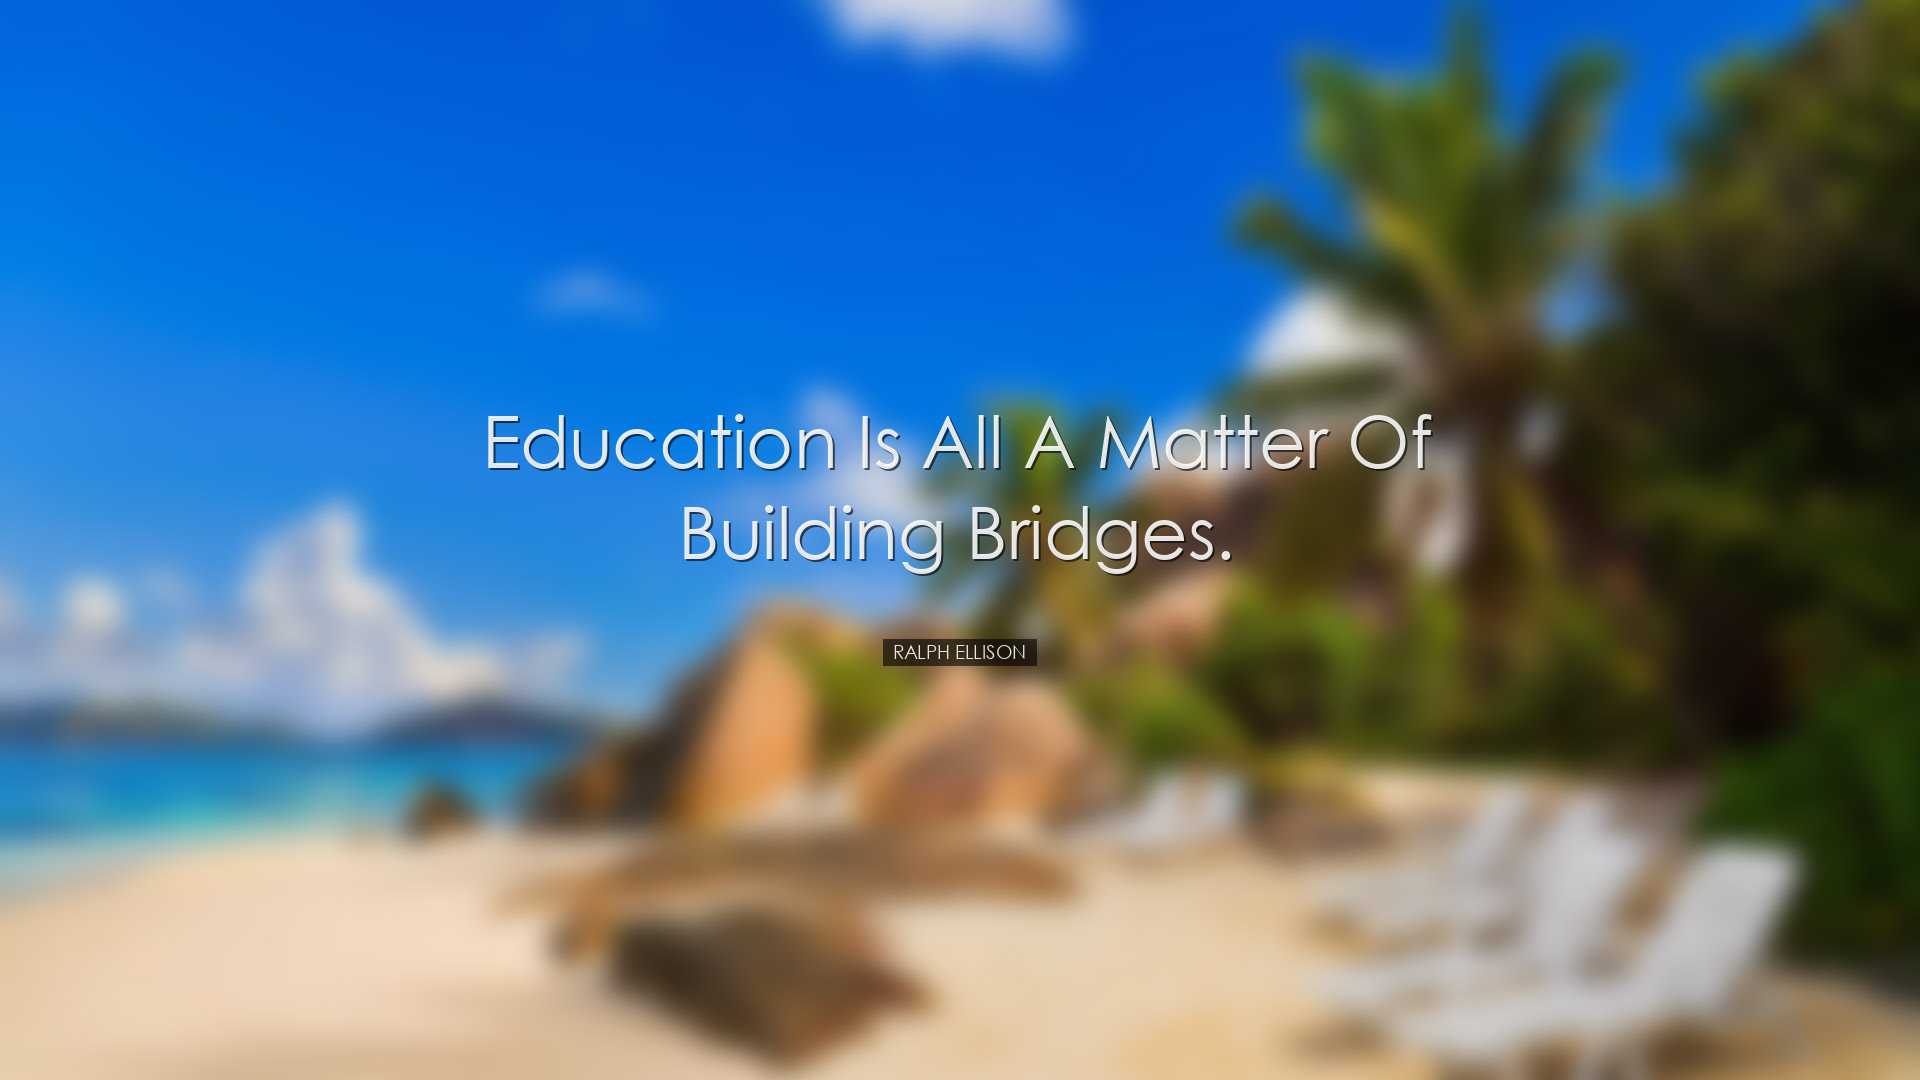 Education is all a matter of building bridges. - Ralph Ellison